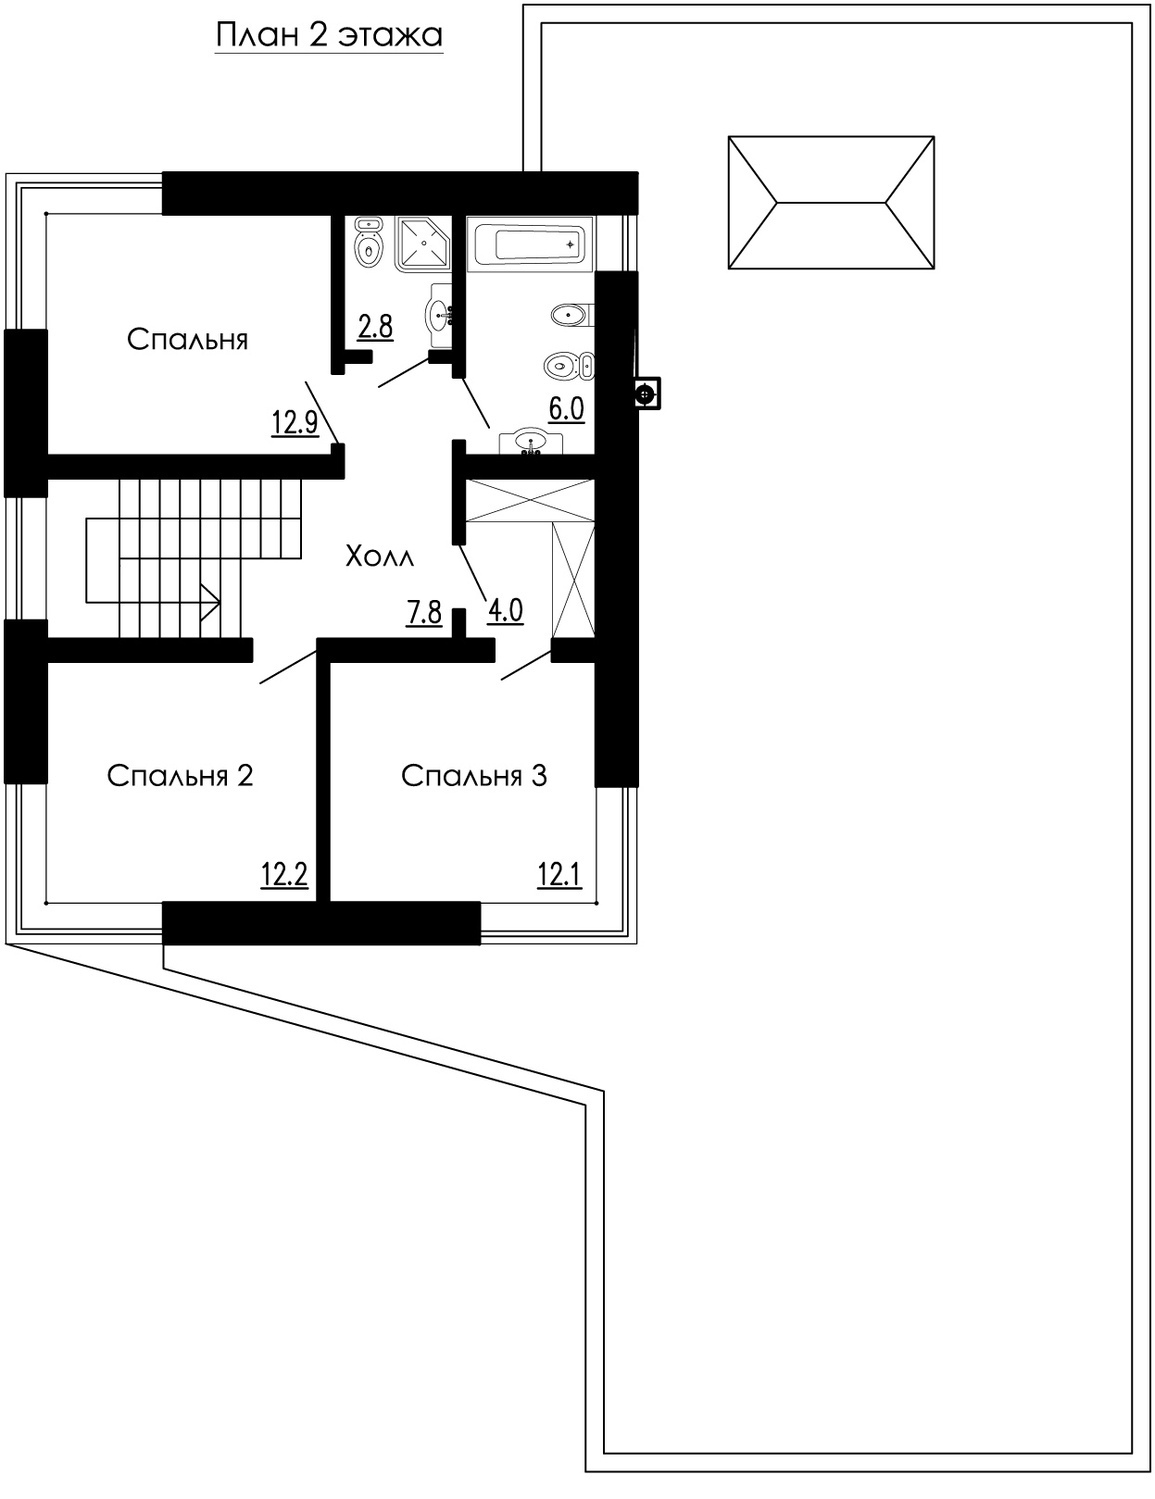 план современного дома 2